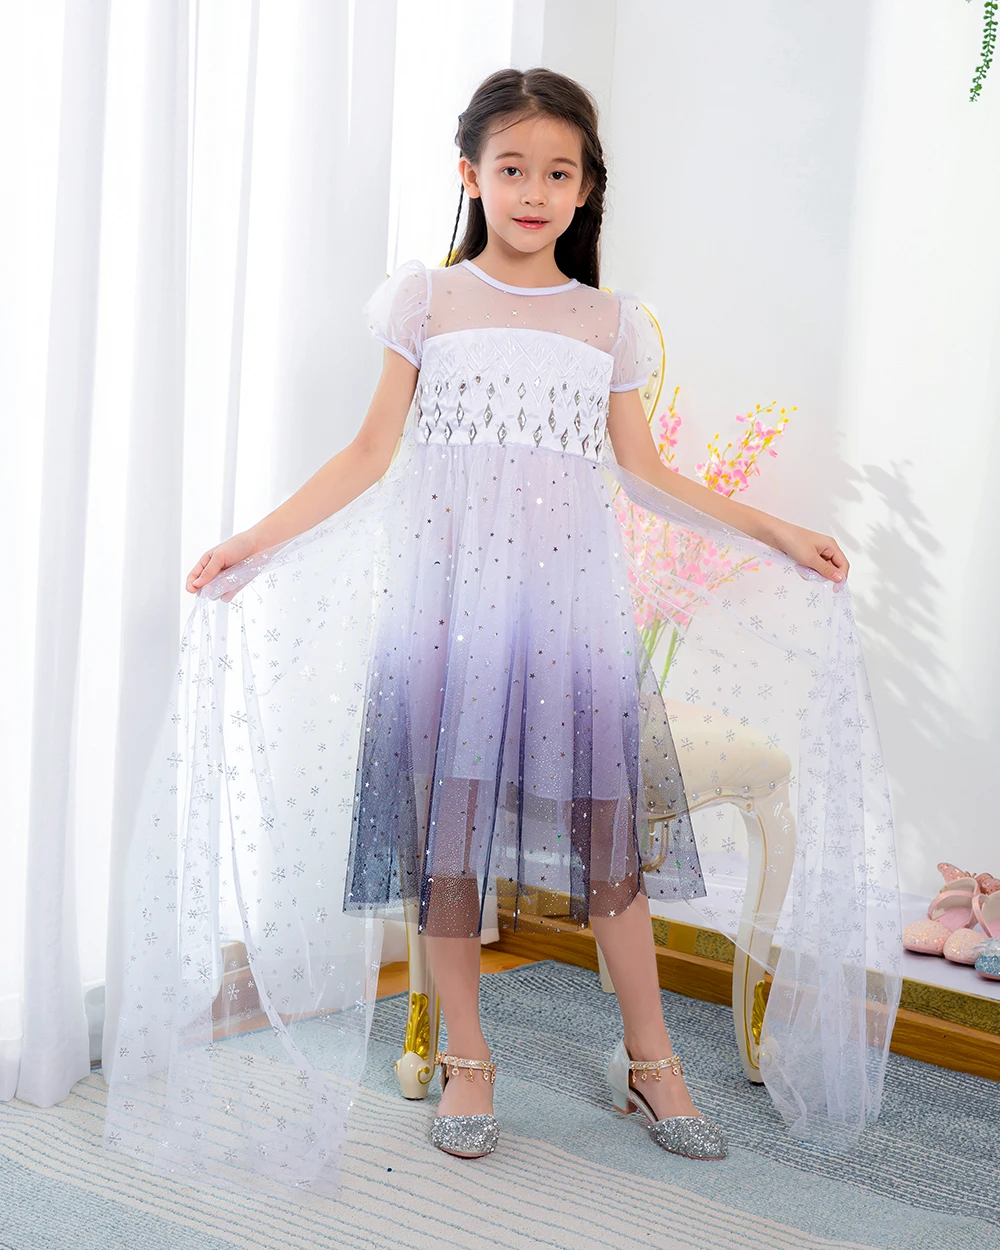 

MQATZ Summer sleeveless Children's dress cosplay Elsa dress new cartoon print Princess Baby dress, Blue/pink